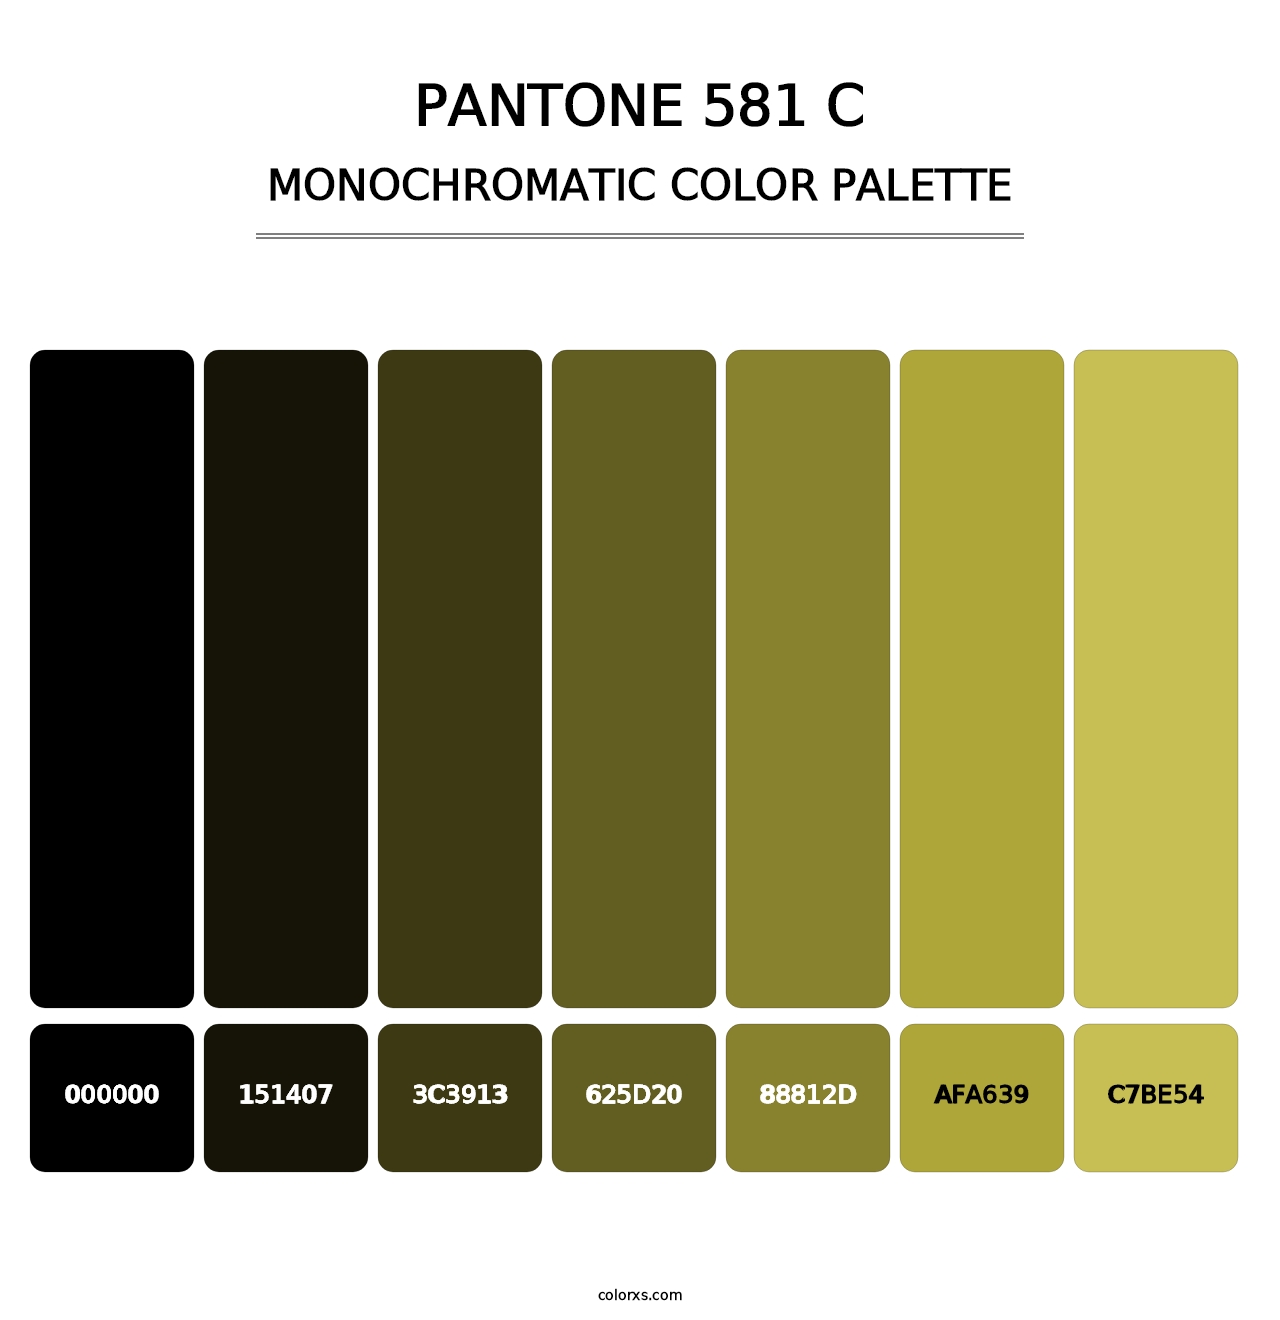 PANTONE 581 C - Monochromatic Color Palette